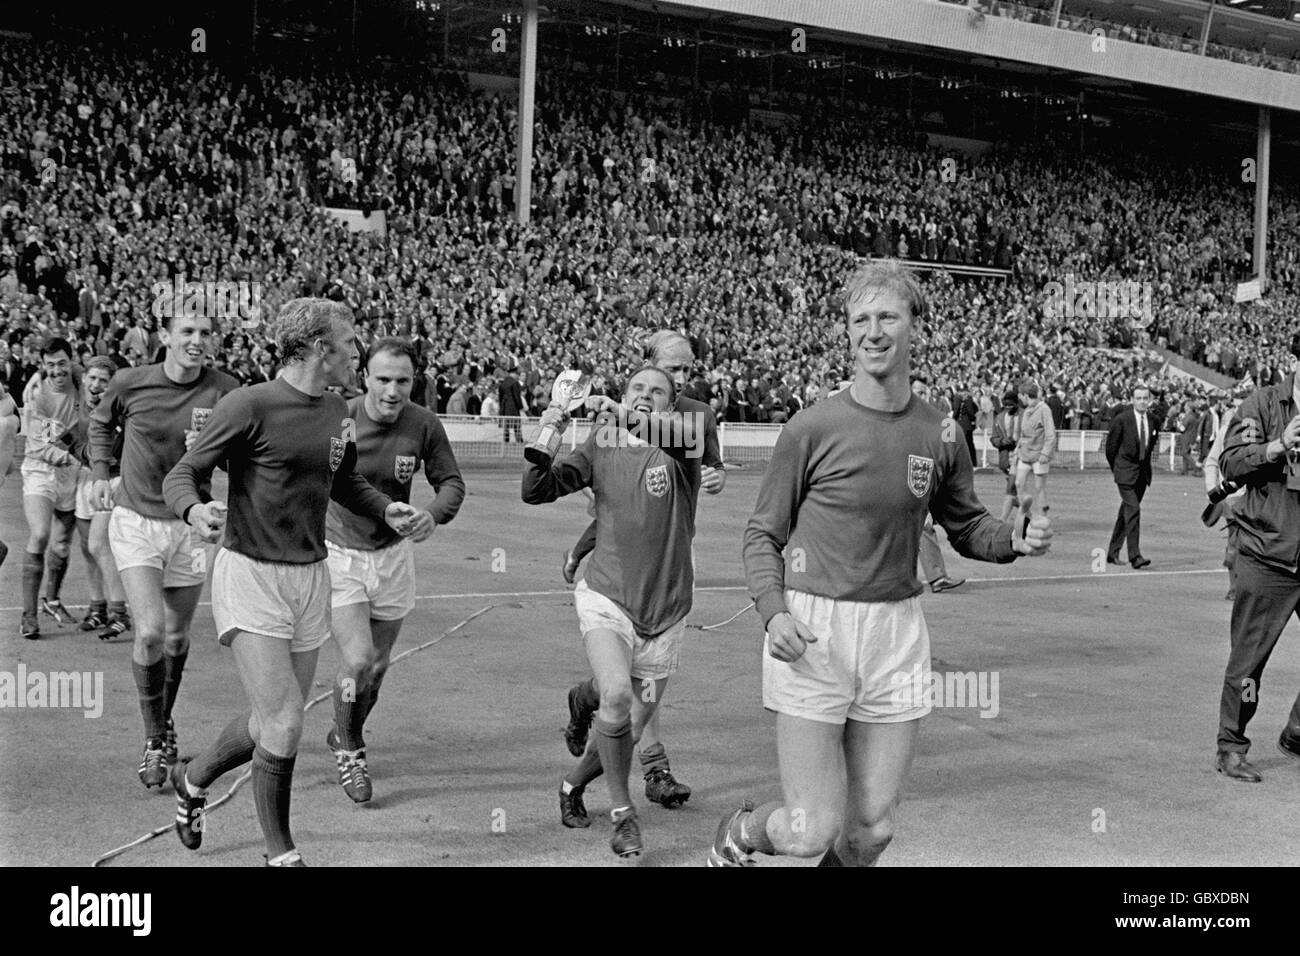 Des joueurs d'Angleterre jubilants défilent autour de Wembley après leur victoire 4-2 : (l-r) Gordon Banks, Alan ball, Martin Peters, Bobby Moore, George Cohen, Ray Wilson, Bobby Charlton, Jack Charlton Banque D'Images